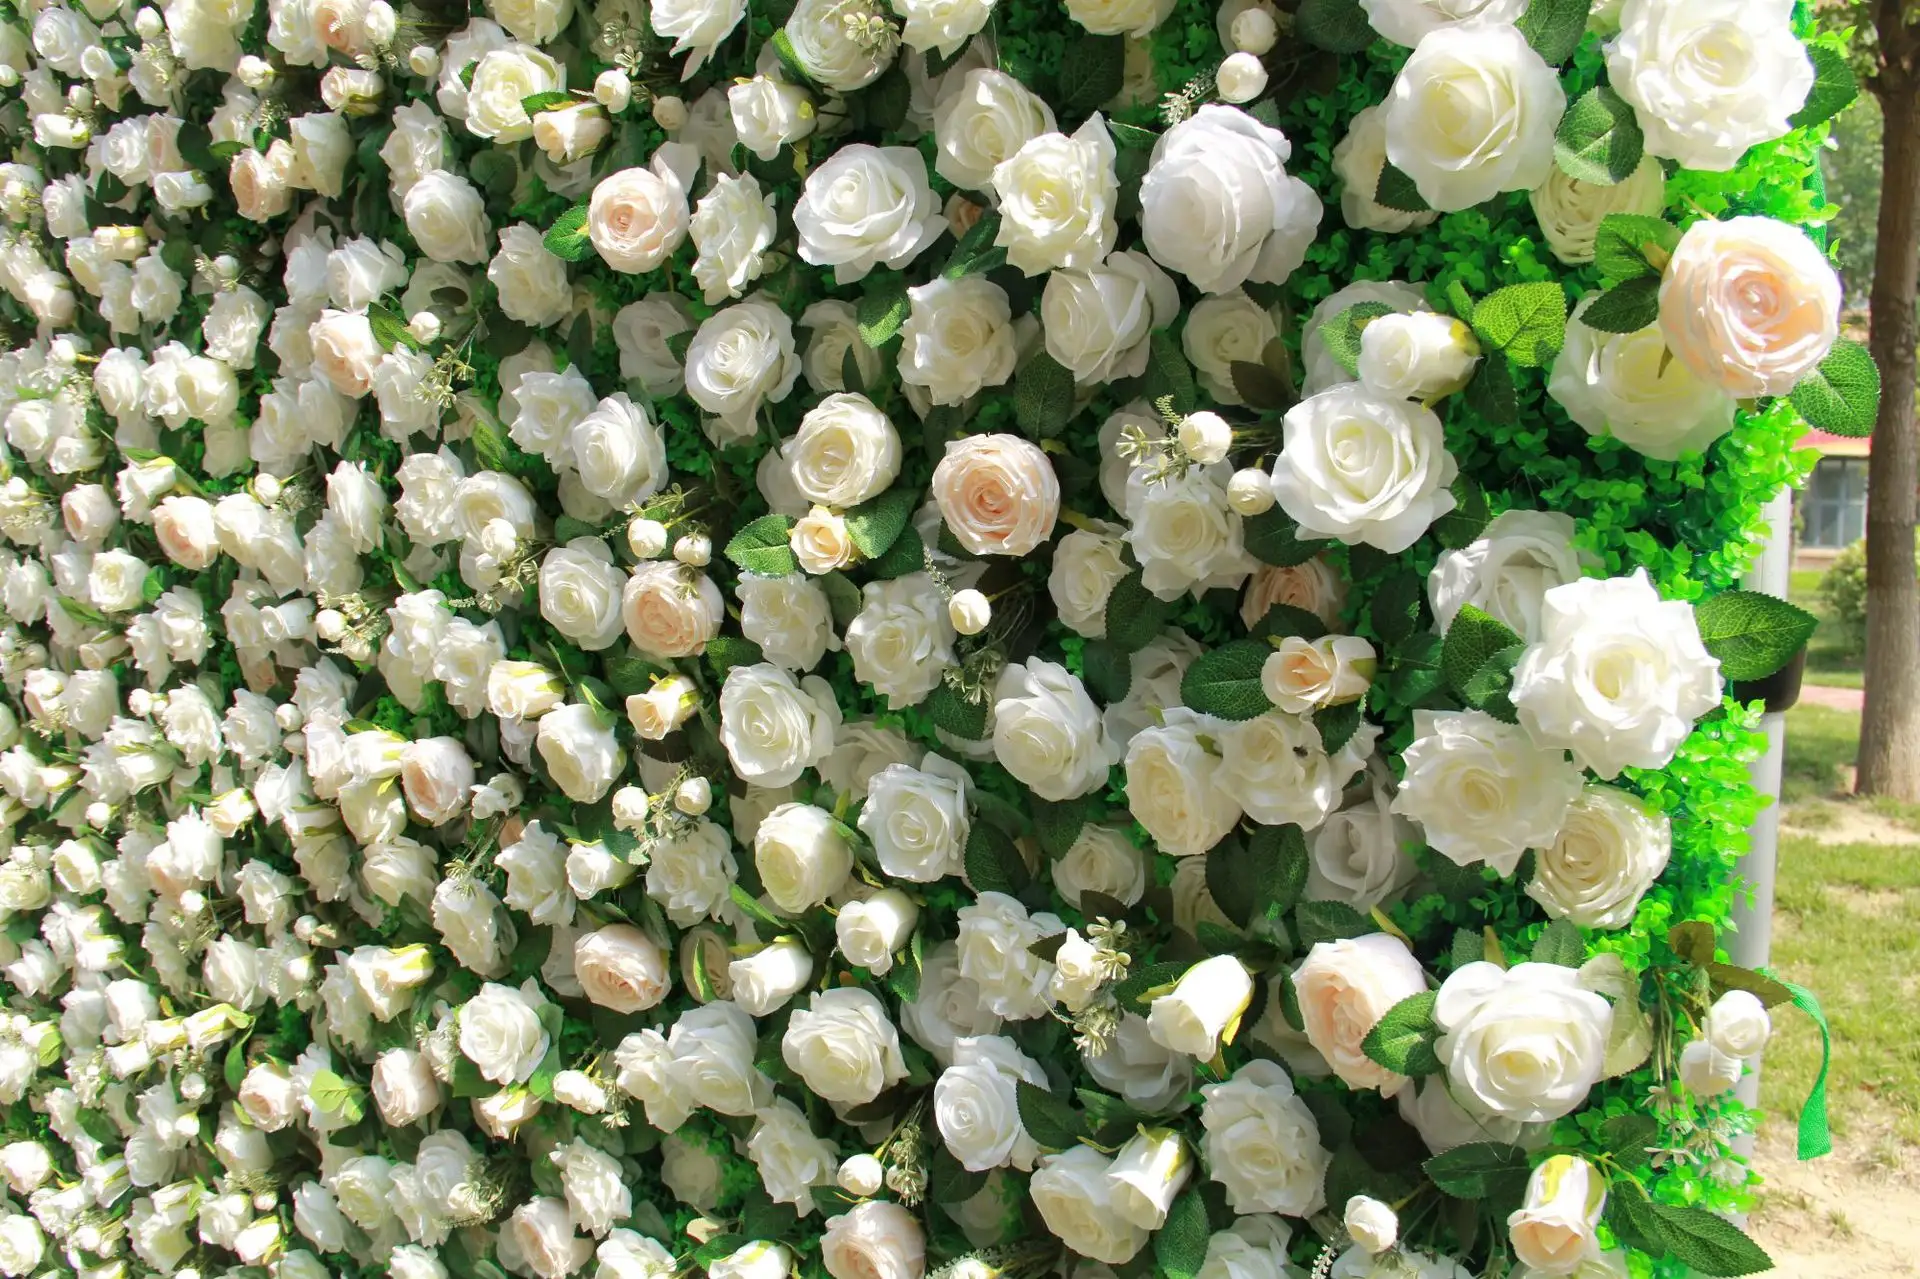 Fondos de fotografía Floral de Rosa Blanca artificial flores de boda decoración de pared foto de fondo decoración de fiesta de cumpleaños